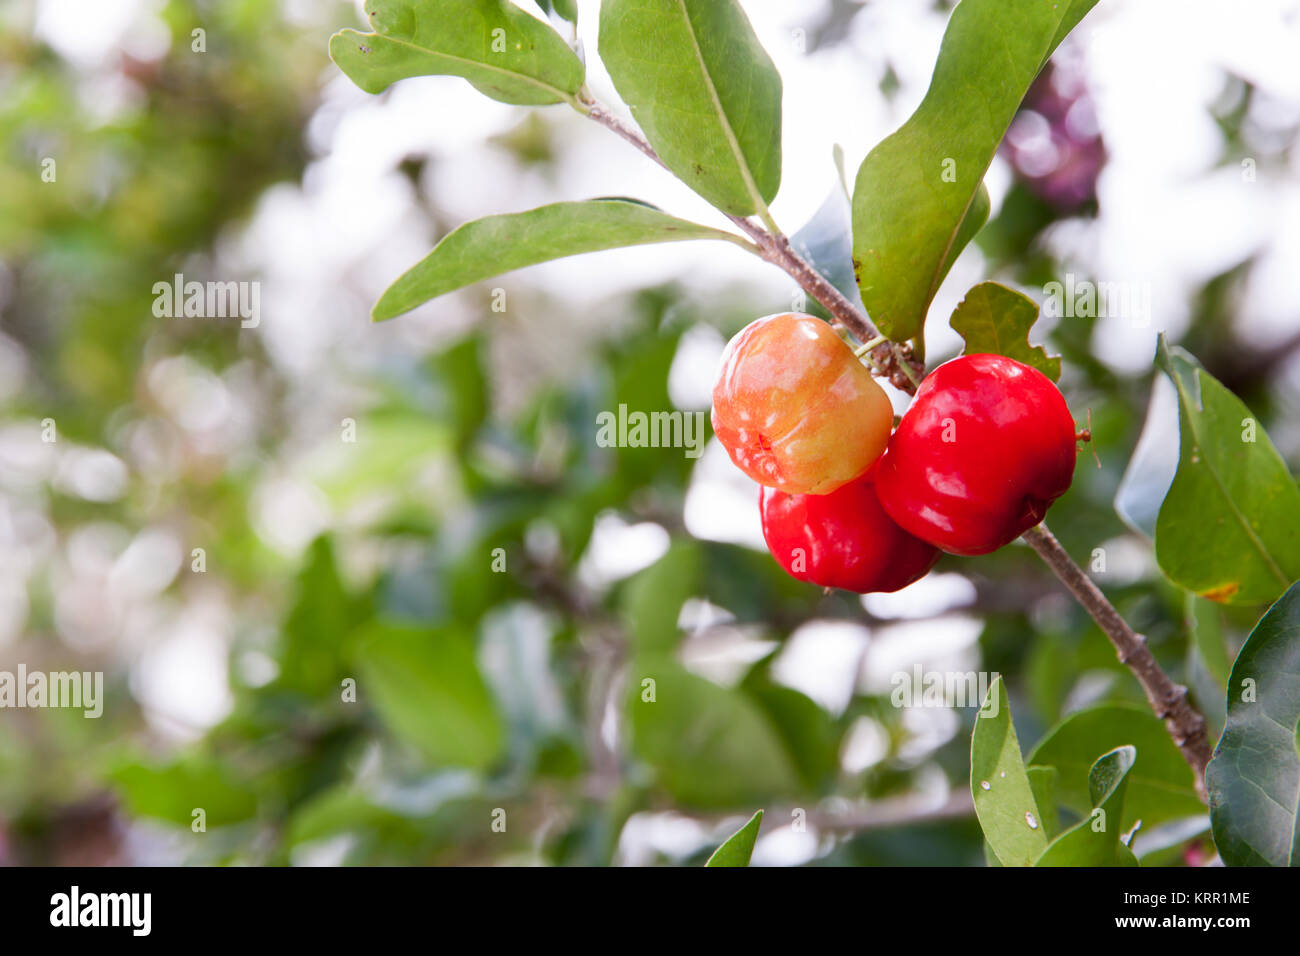 Barbados cherry (Malpighia glabra L.) Stock Photo